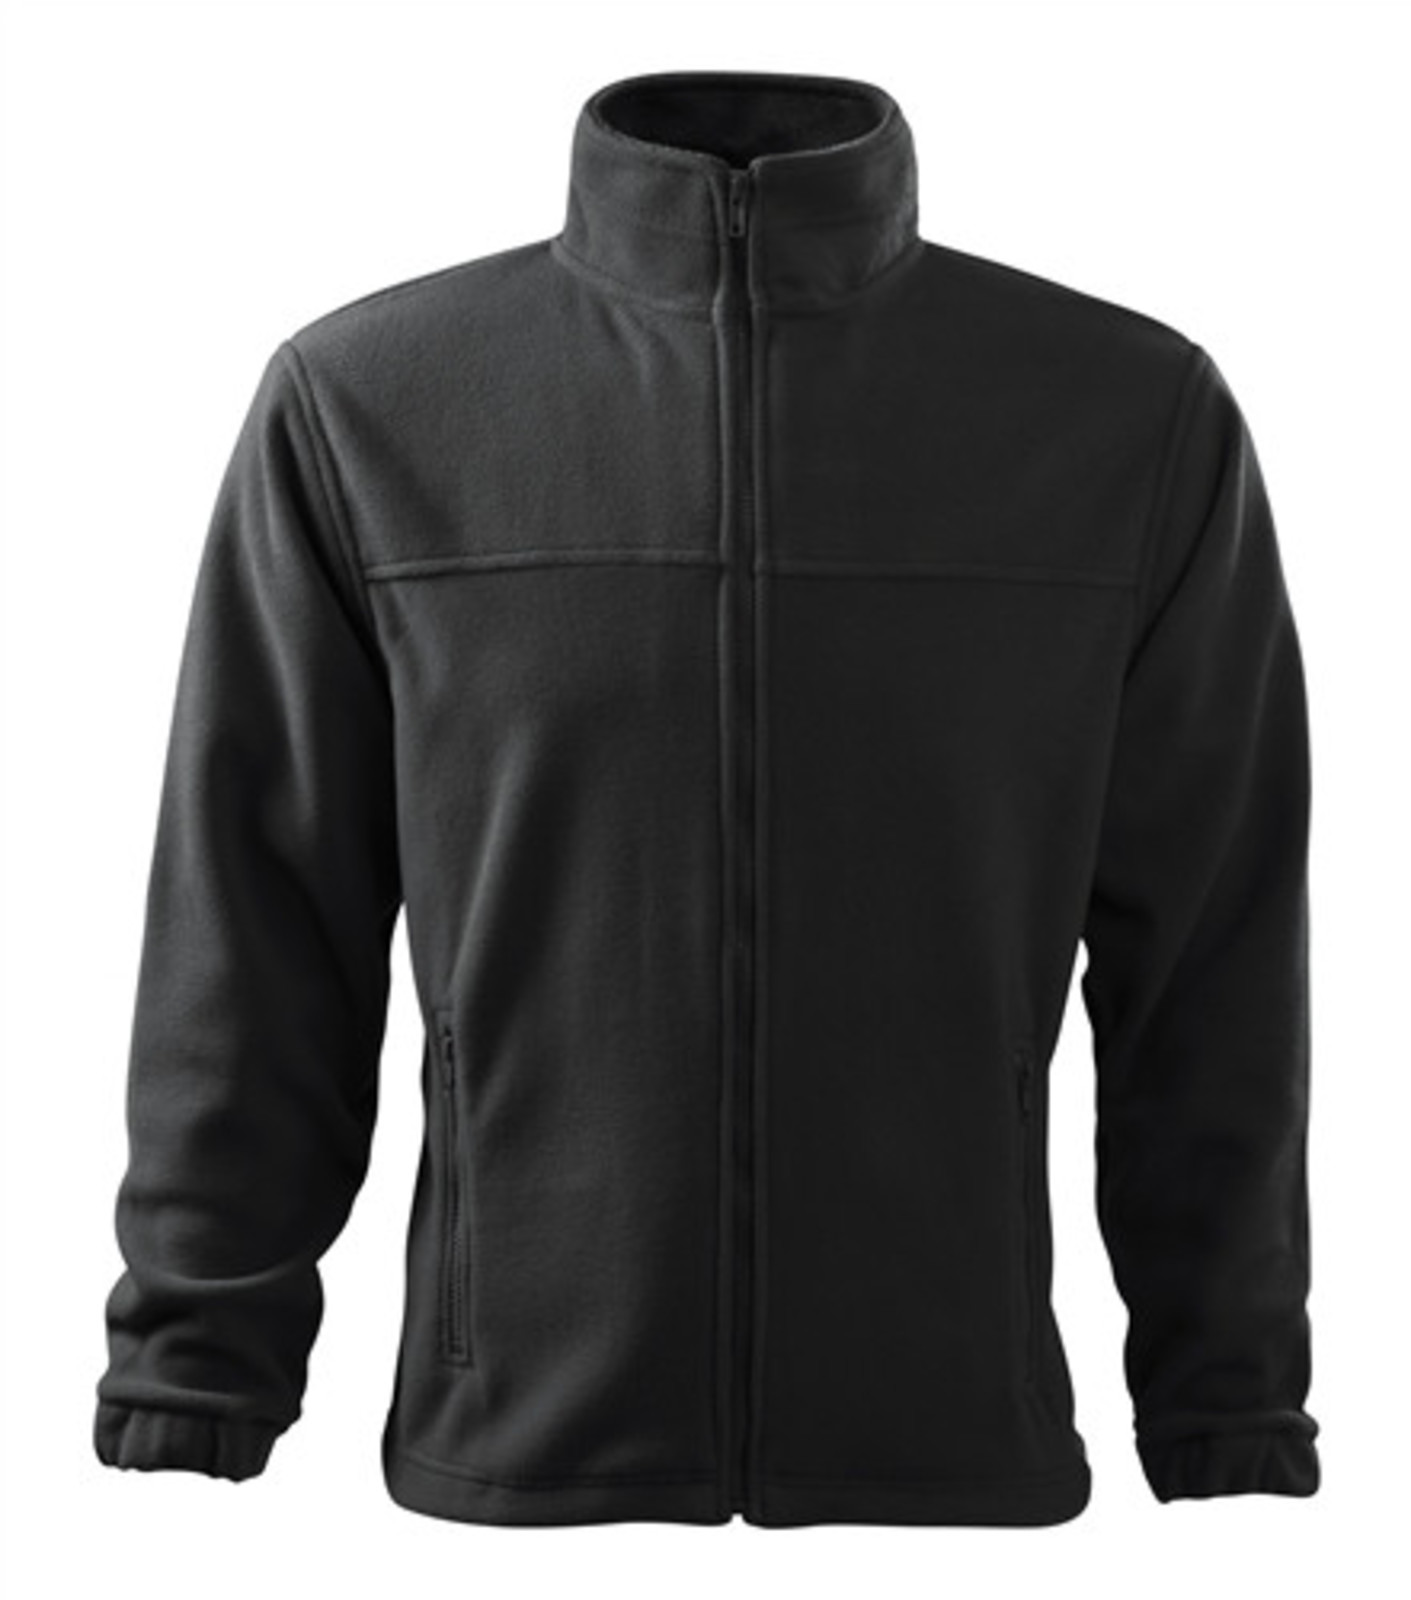 Pánska fleece mikina Rimeck Jacket 501 - veľkosť: XL, farba: šedá ebony